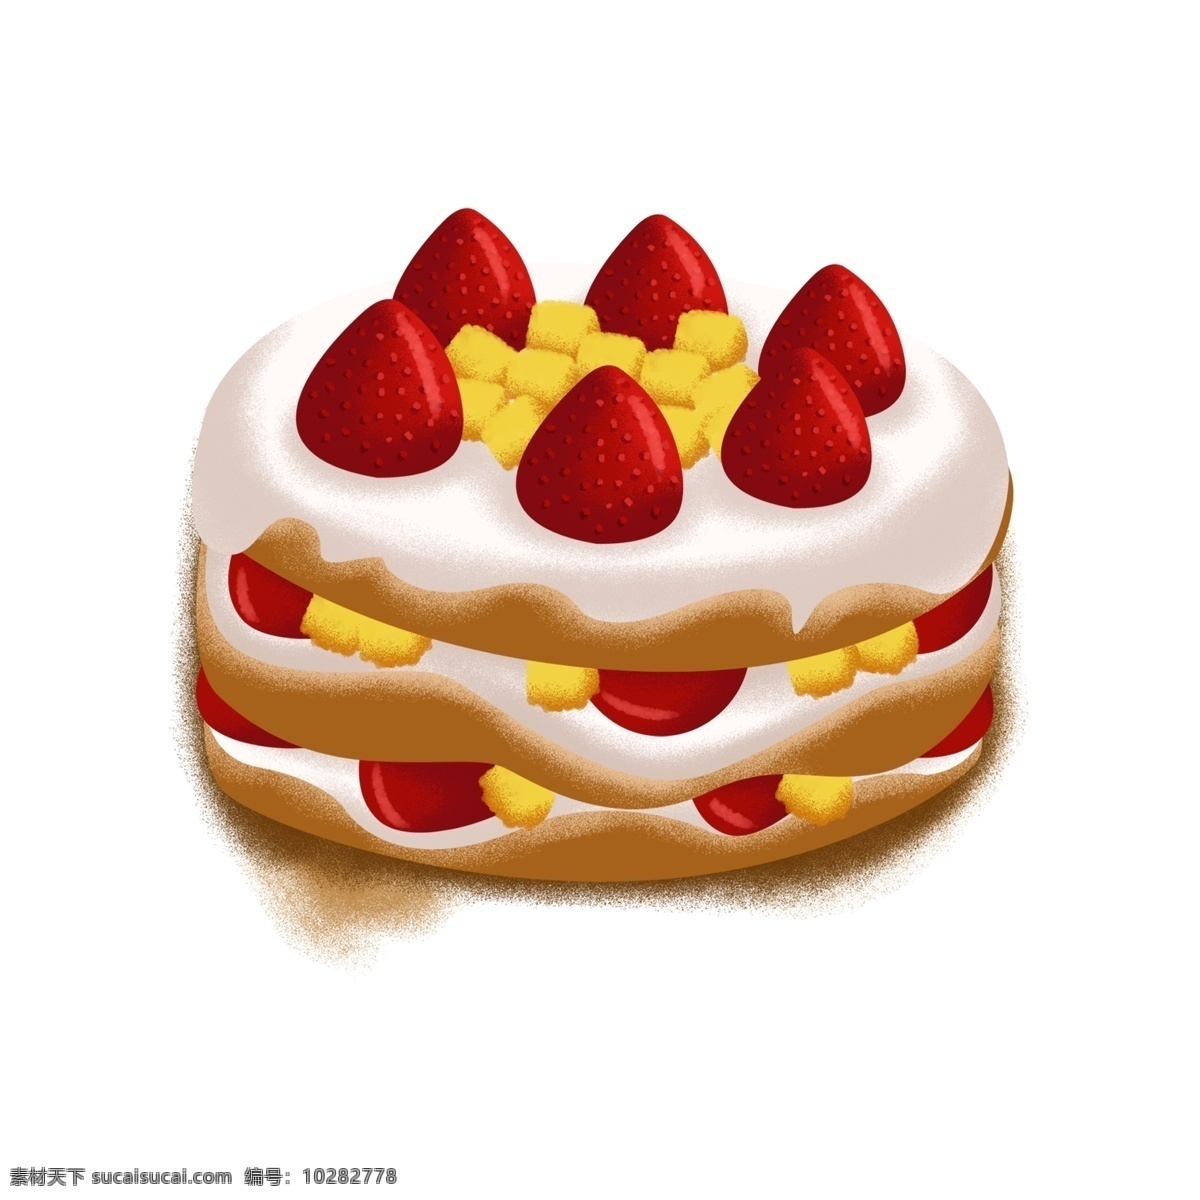 水果 裸 蛋糕 卡通 水果裸蛋糕 草莓裸蛋糕 奶油裸蛋糕 手绘 点心 甜点 草莓芒果蛋糕